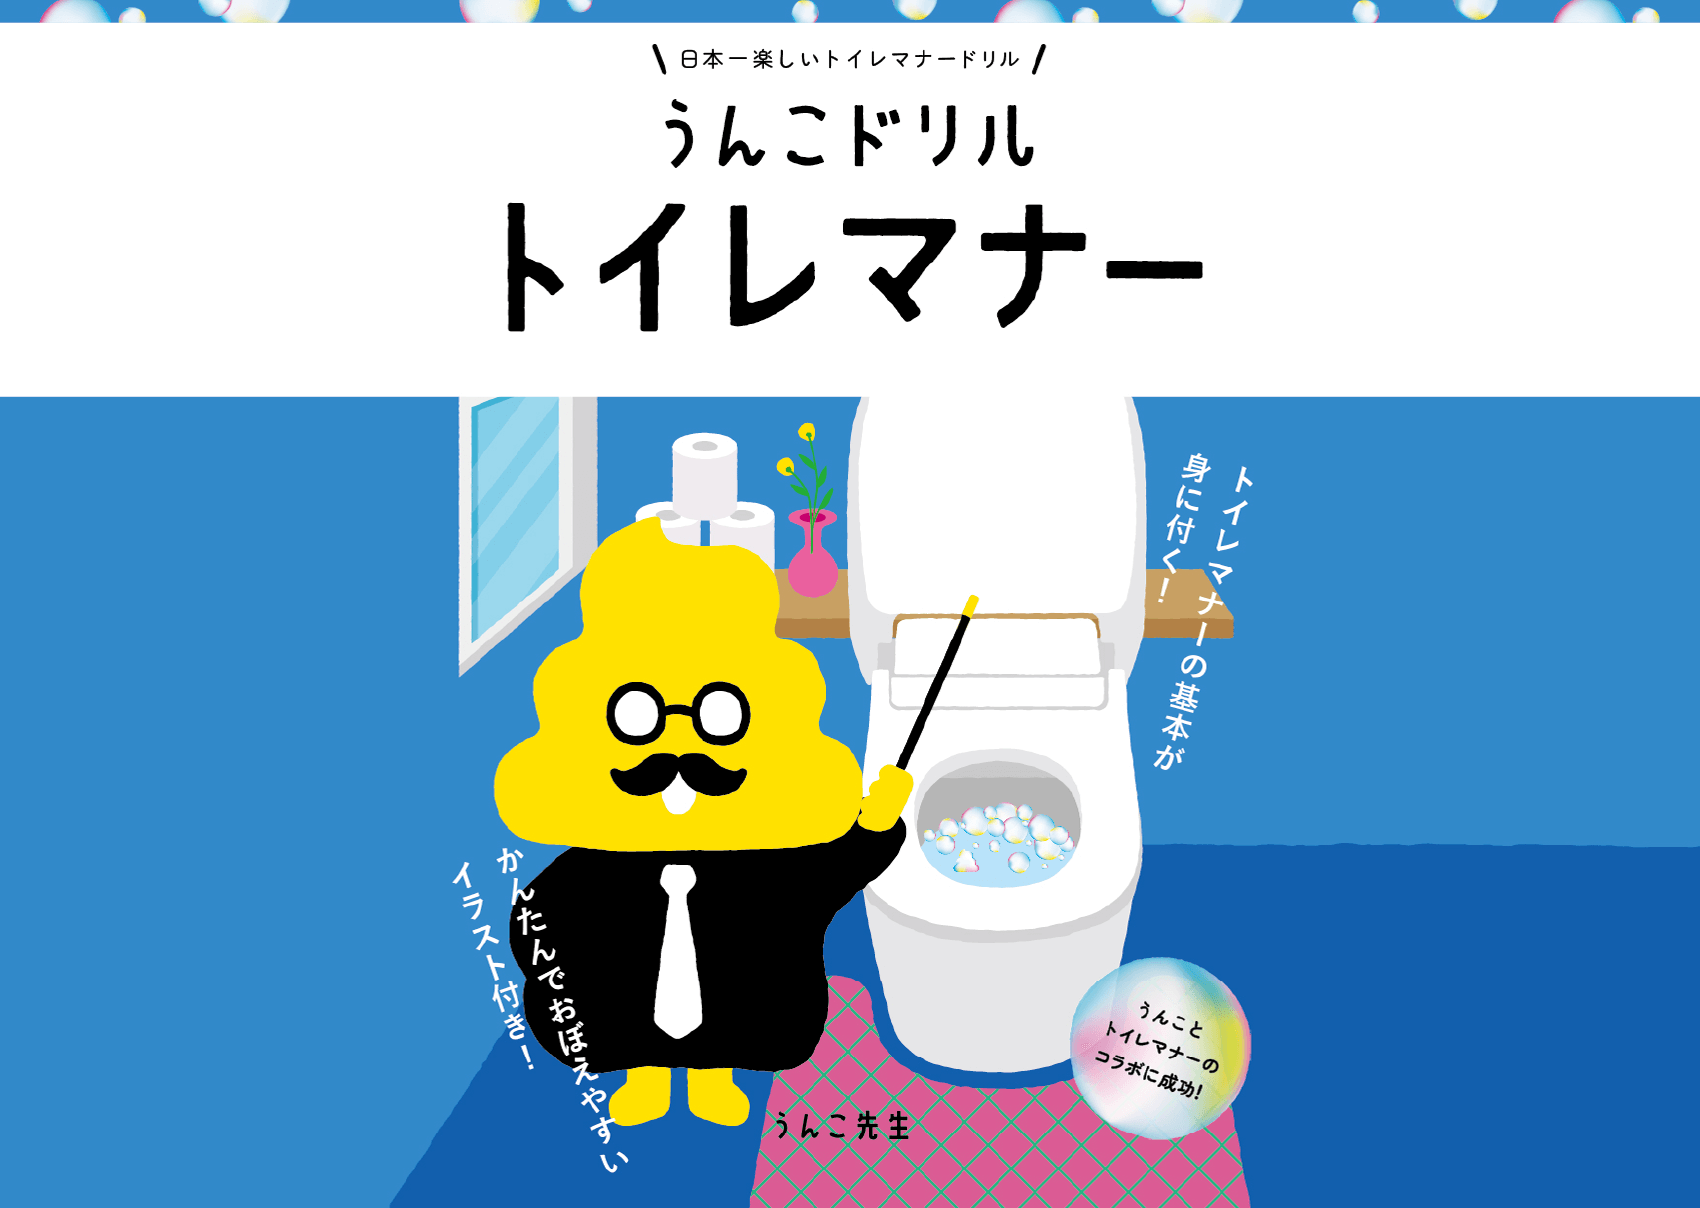 日本一楽しいトイレマナードリル1